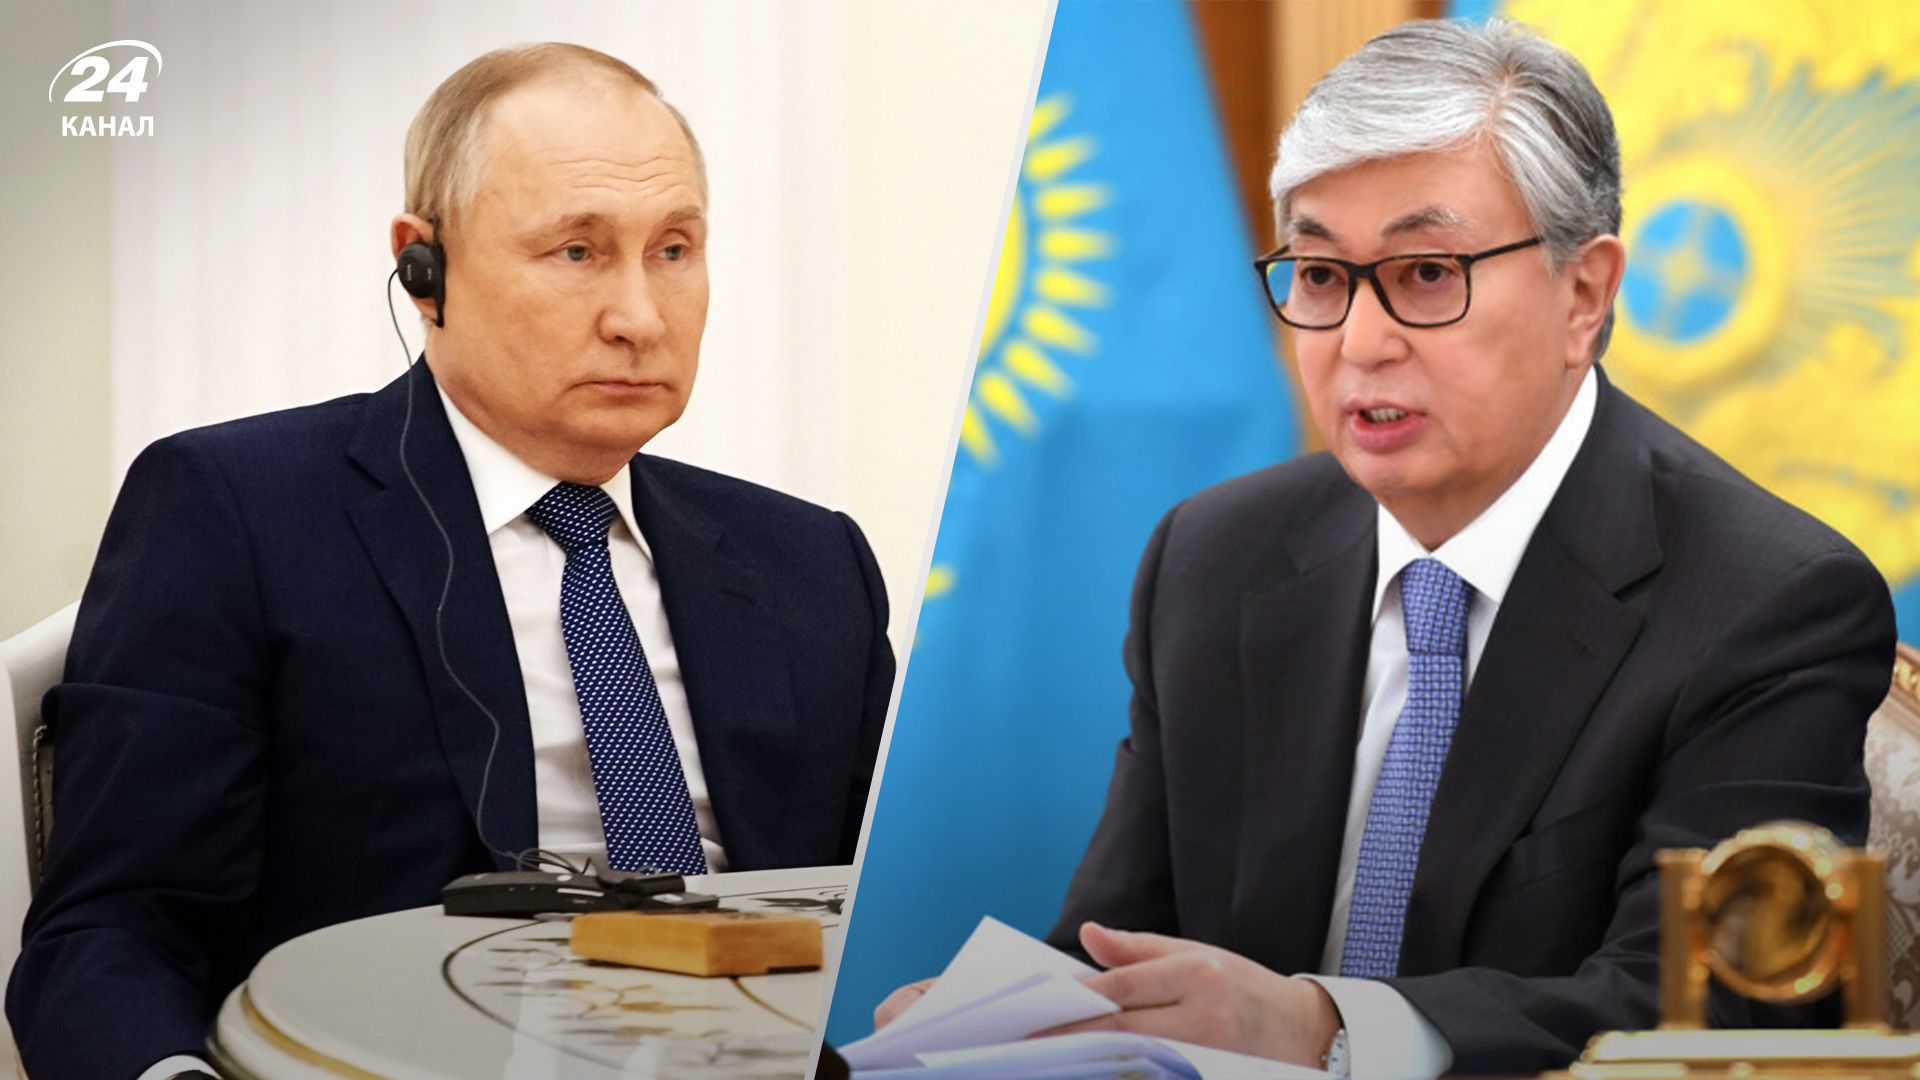 Казахстан и Россия - Владимир Путин потерял влияние на Центральную Азию - 24 Канал